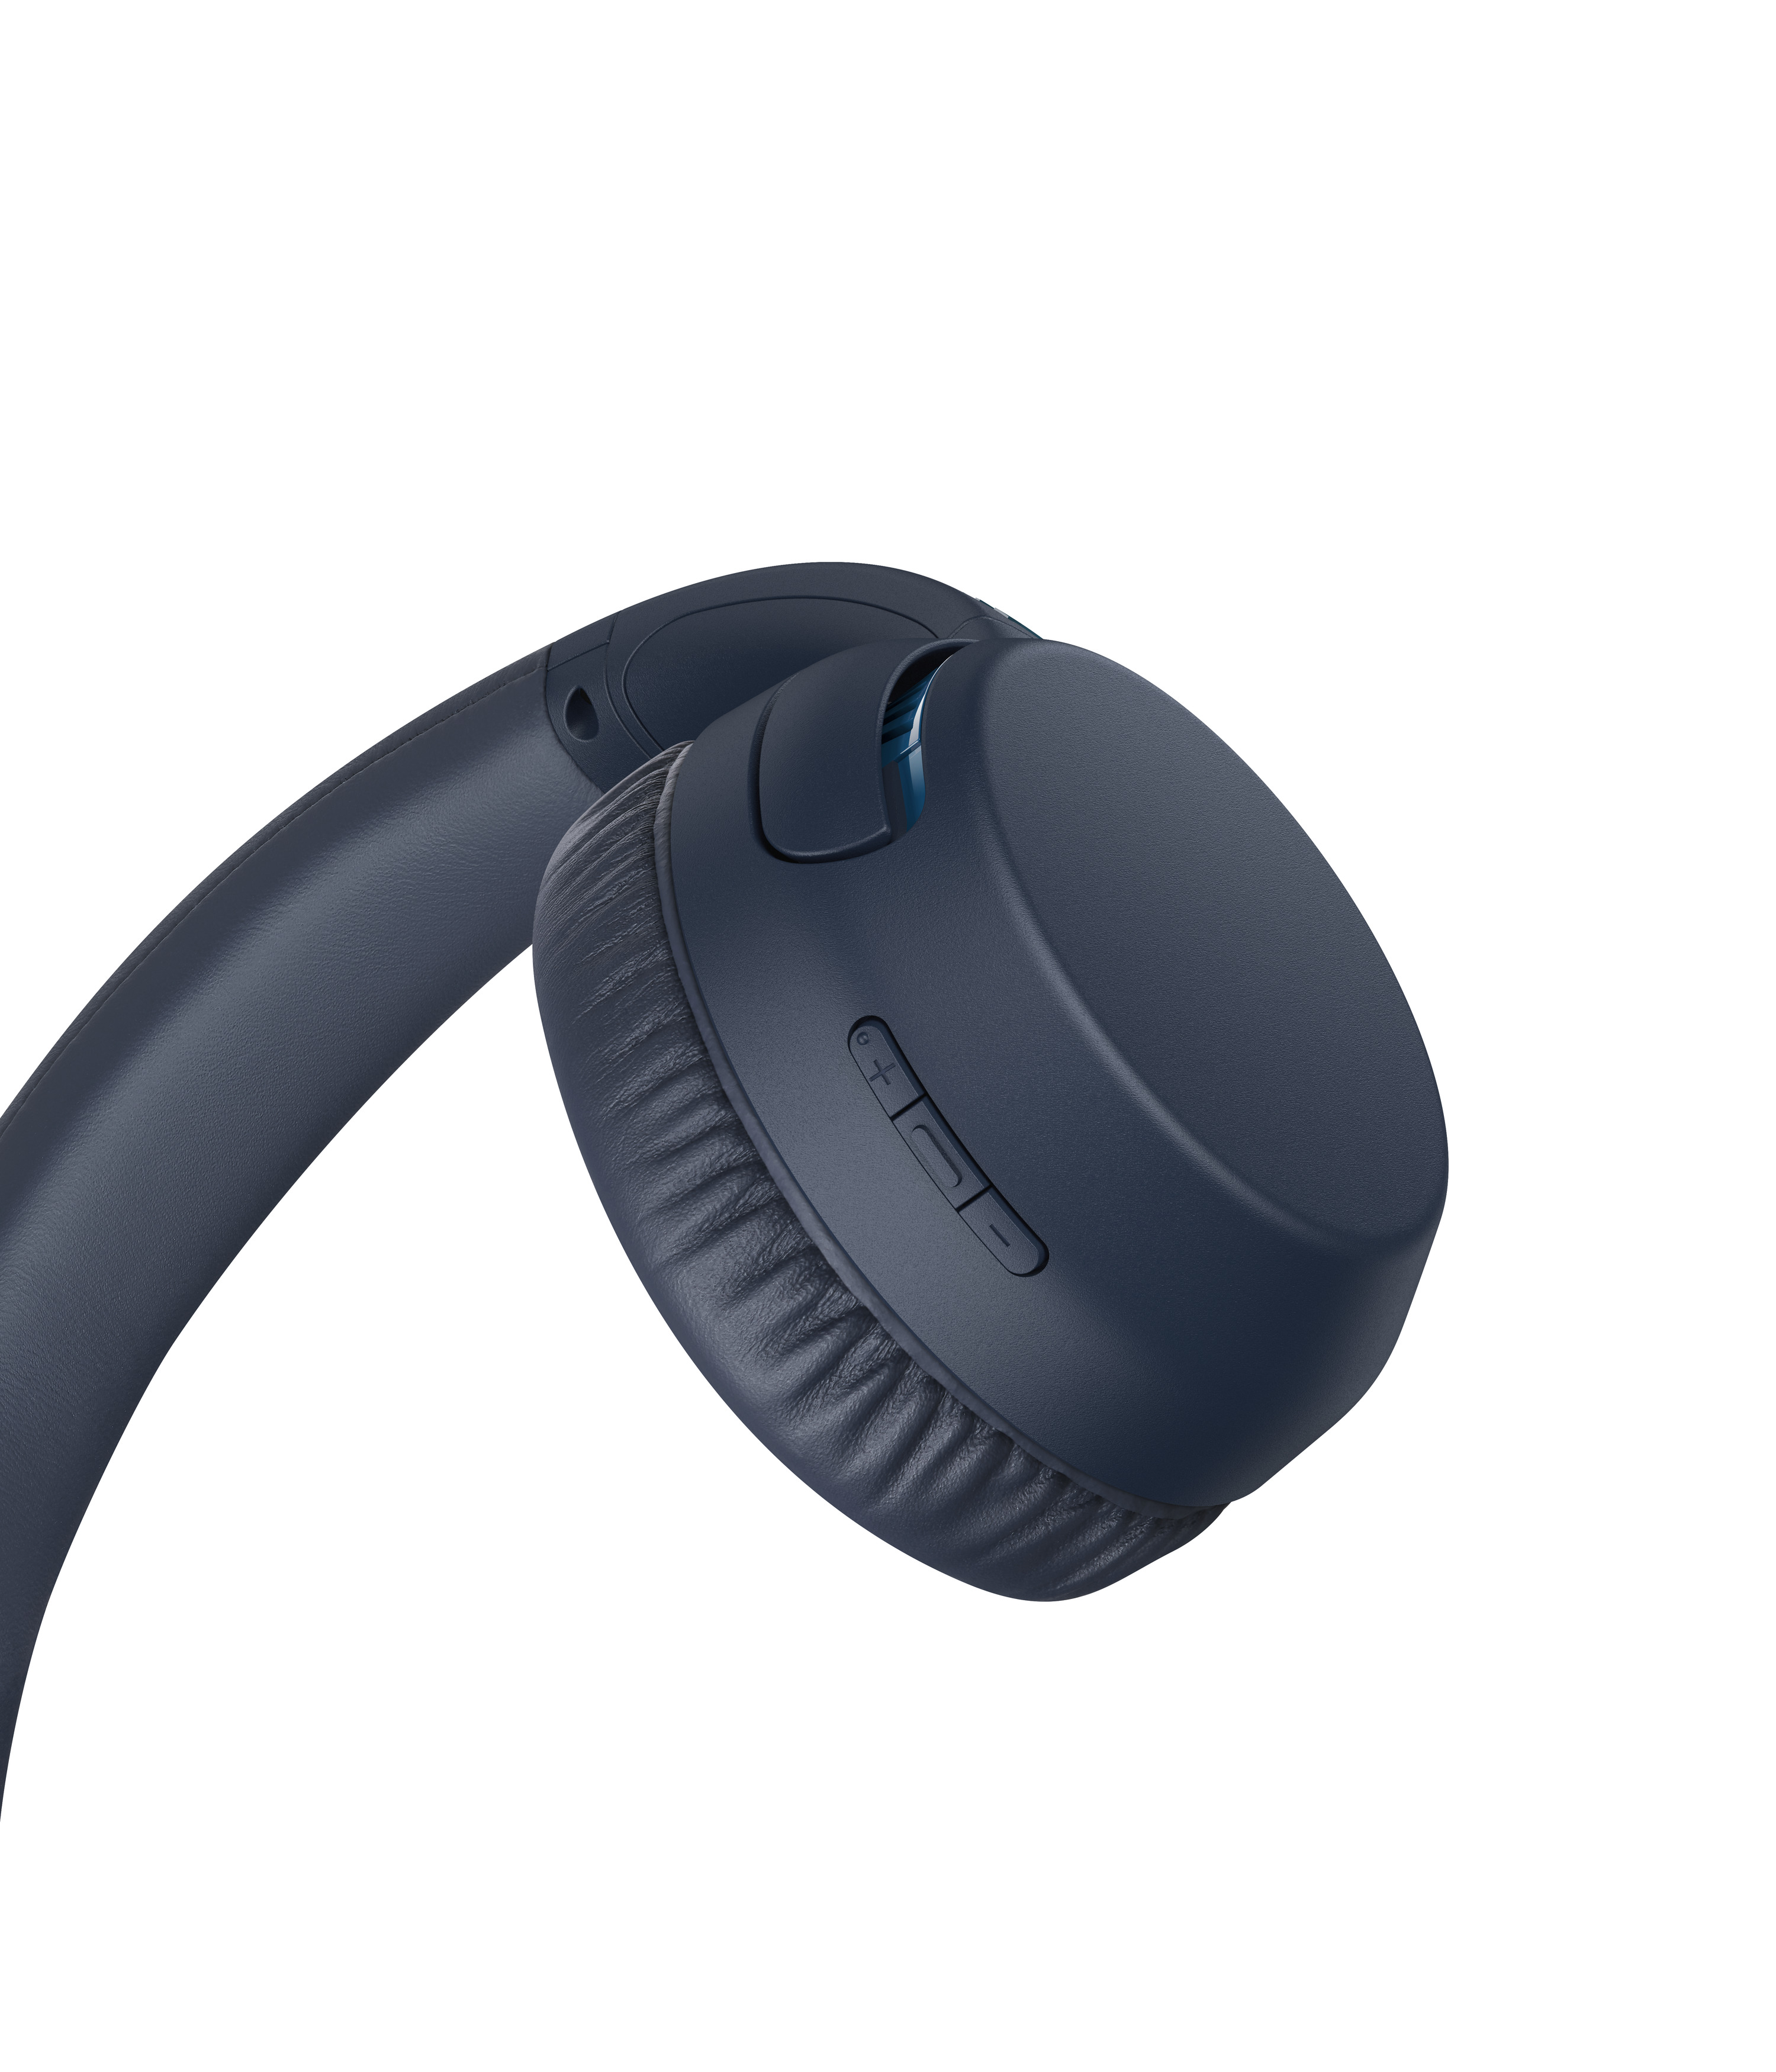 SONY WH-XB700, On-ear Bluetooth Blau Kopfhörer